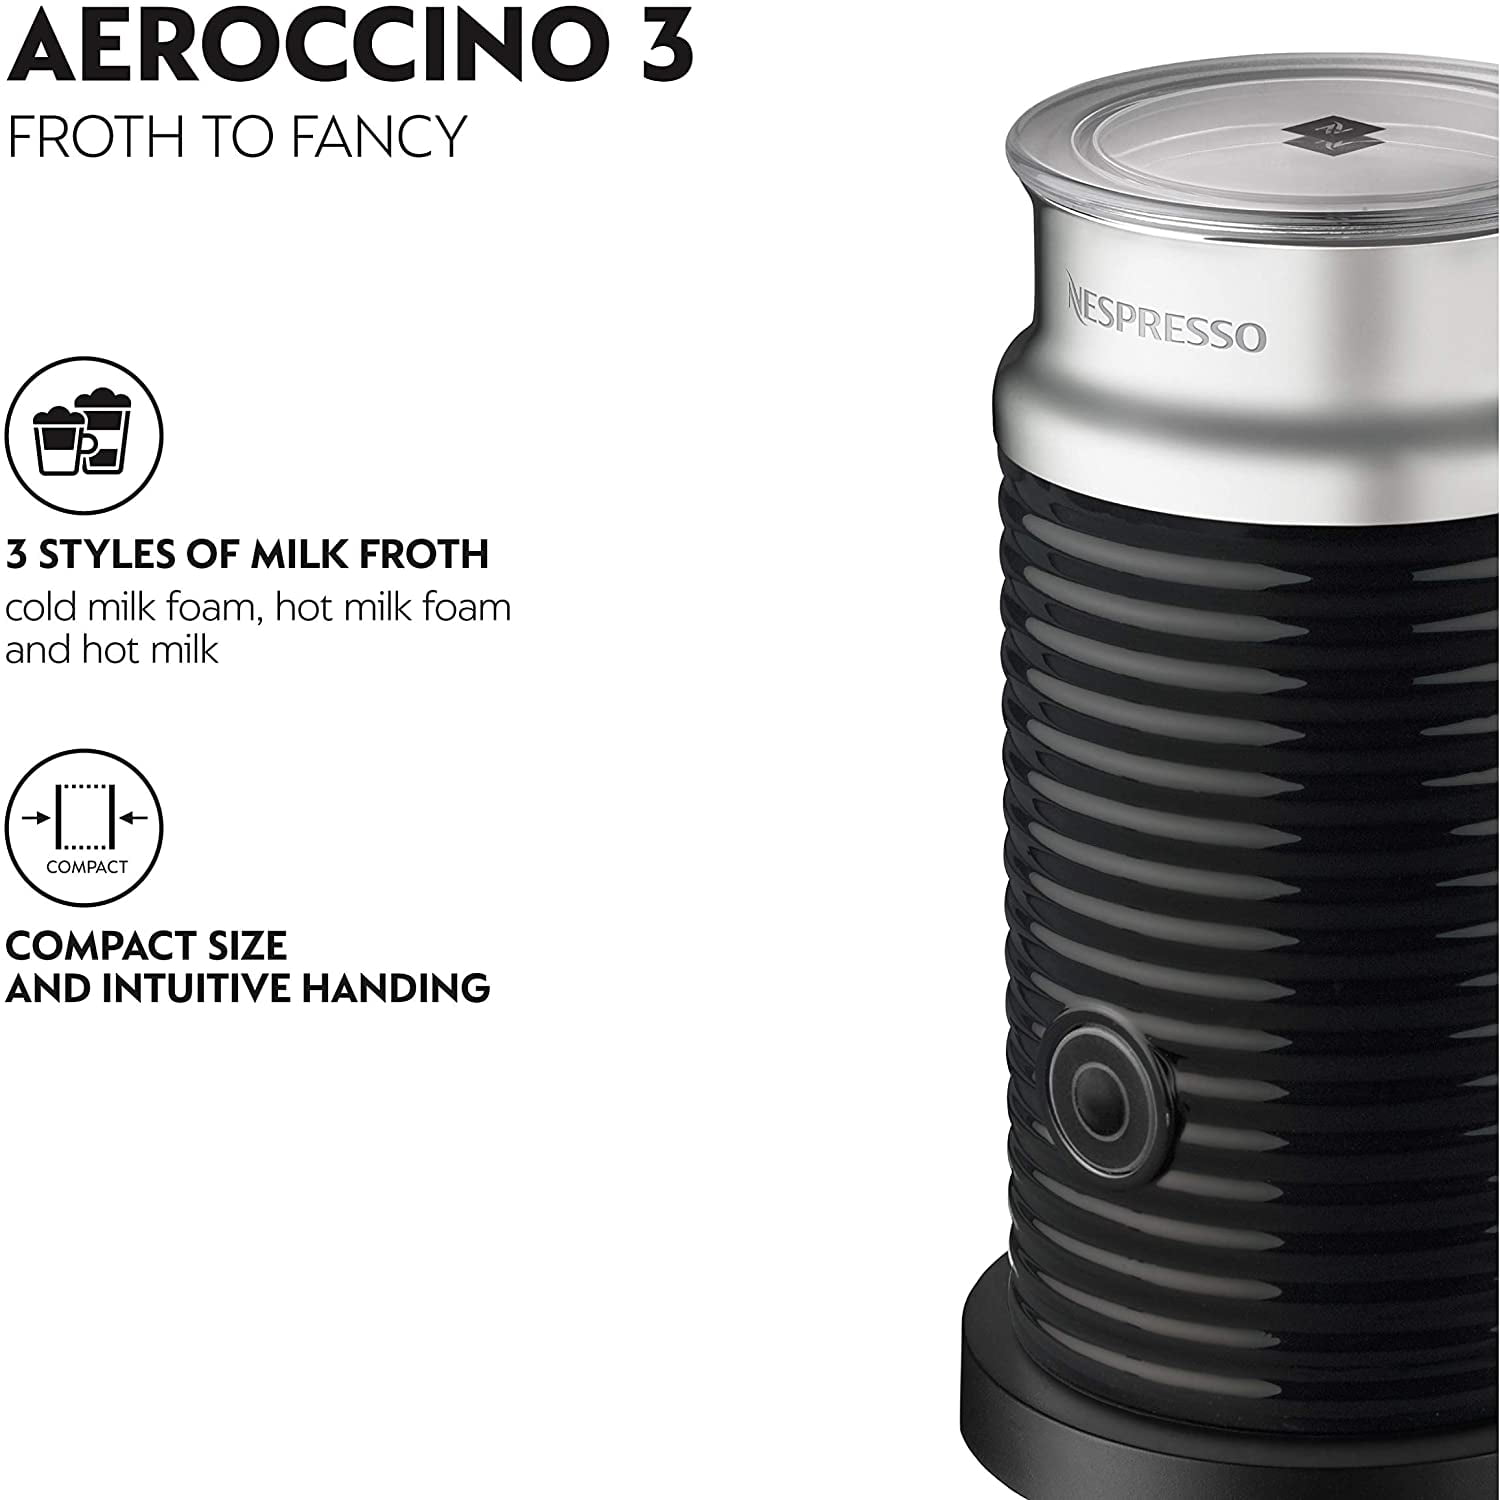 BRAND NEW AEROCCINO 3 NESPRESSO MILK FROTHER BLACK RED OR WHITE AEROCINNO 3